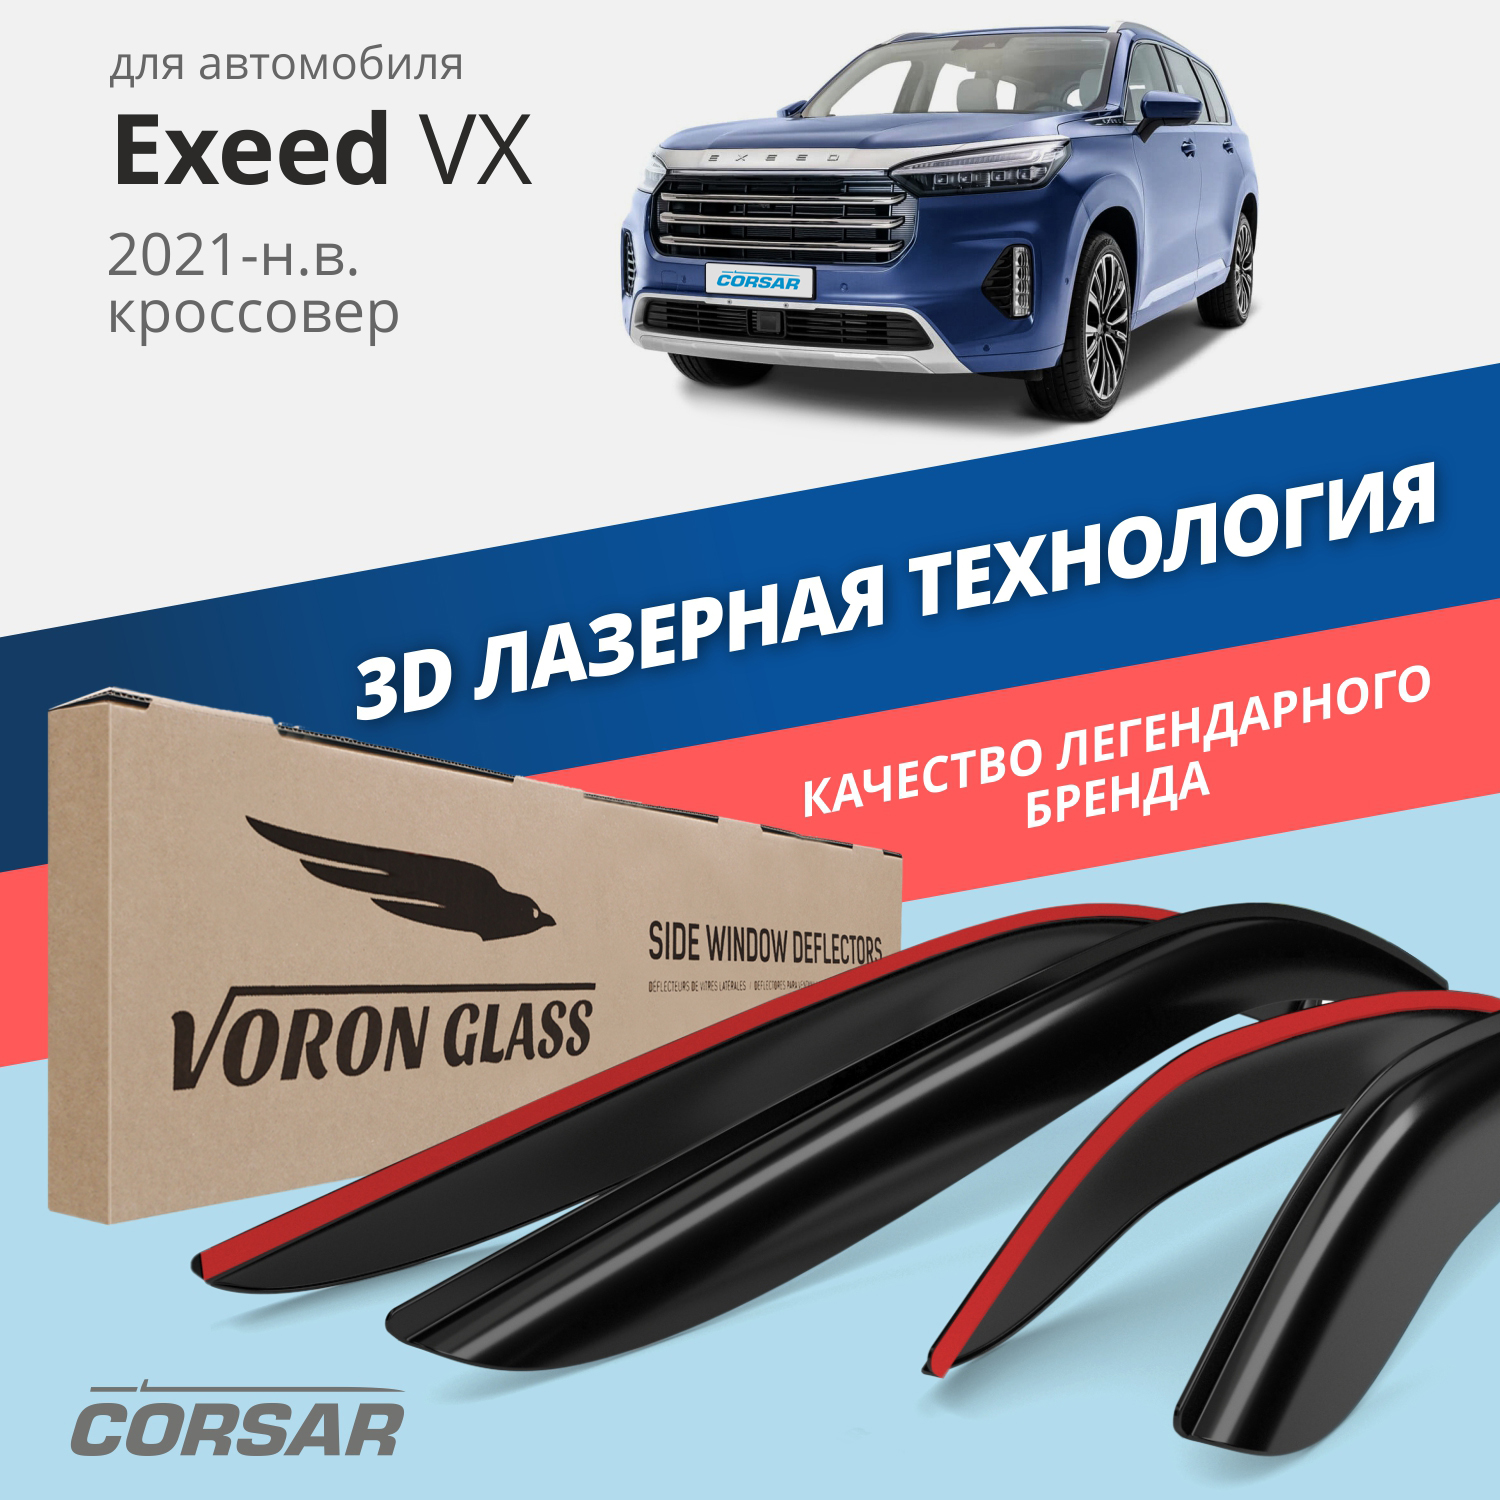 Дефлекторы VORON GLASS CORSAR Exeed VX 21-н.в. кроссовер, накладные, 4 шт.